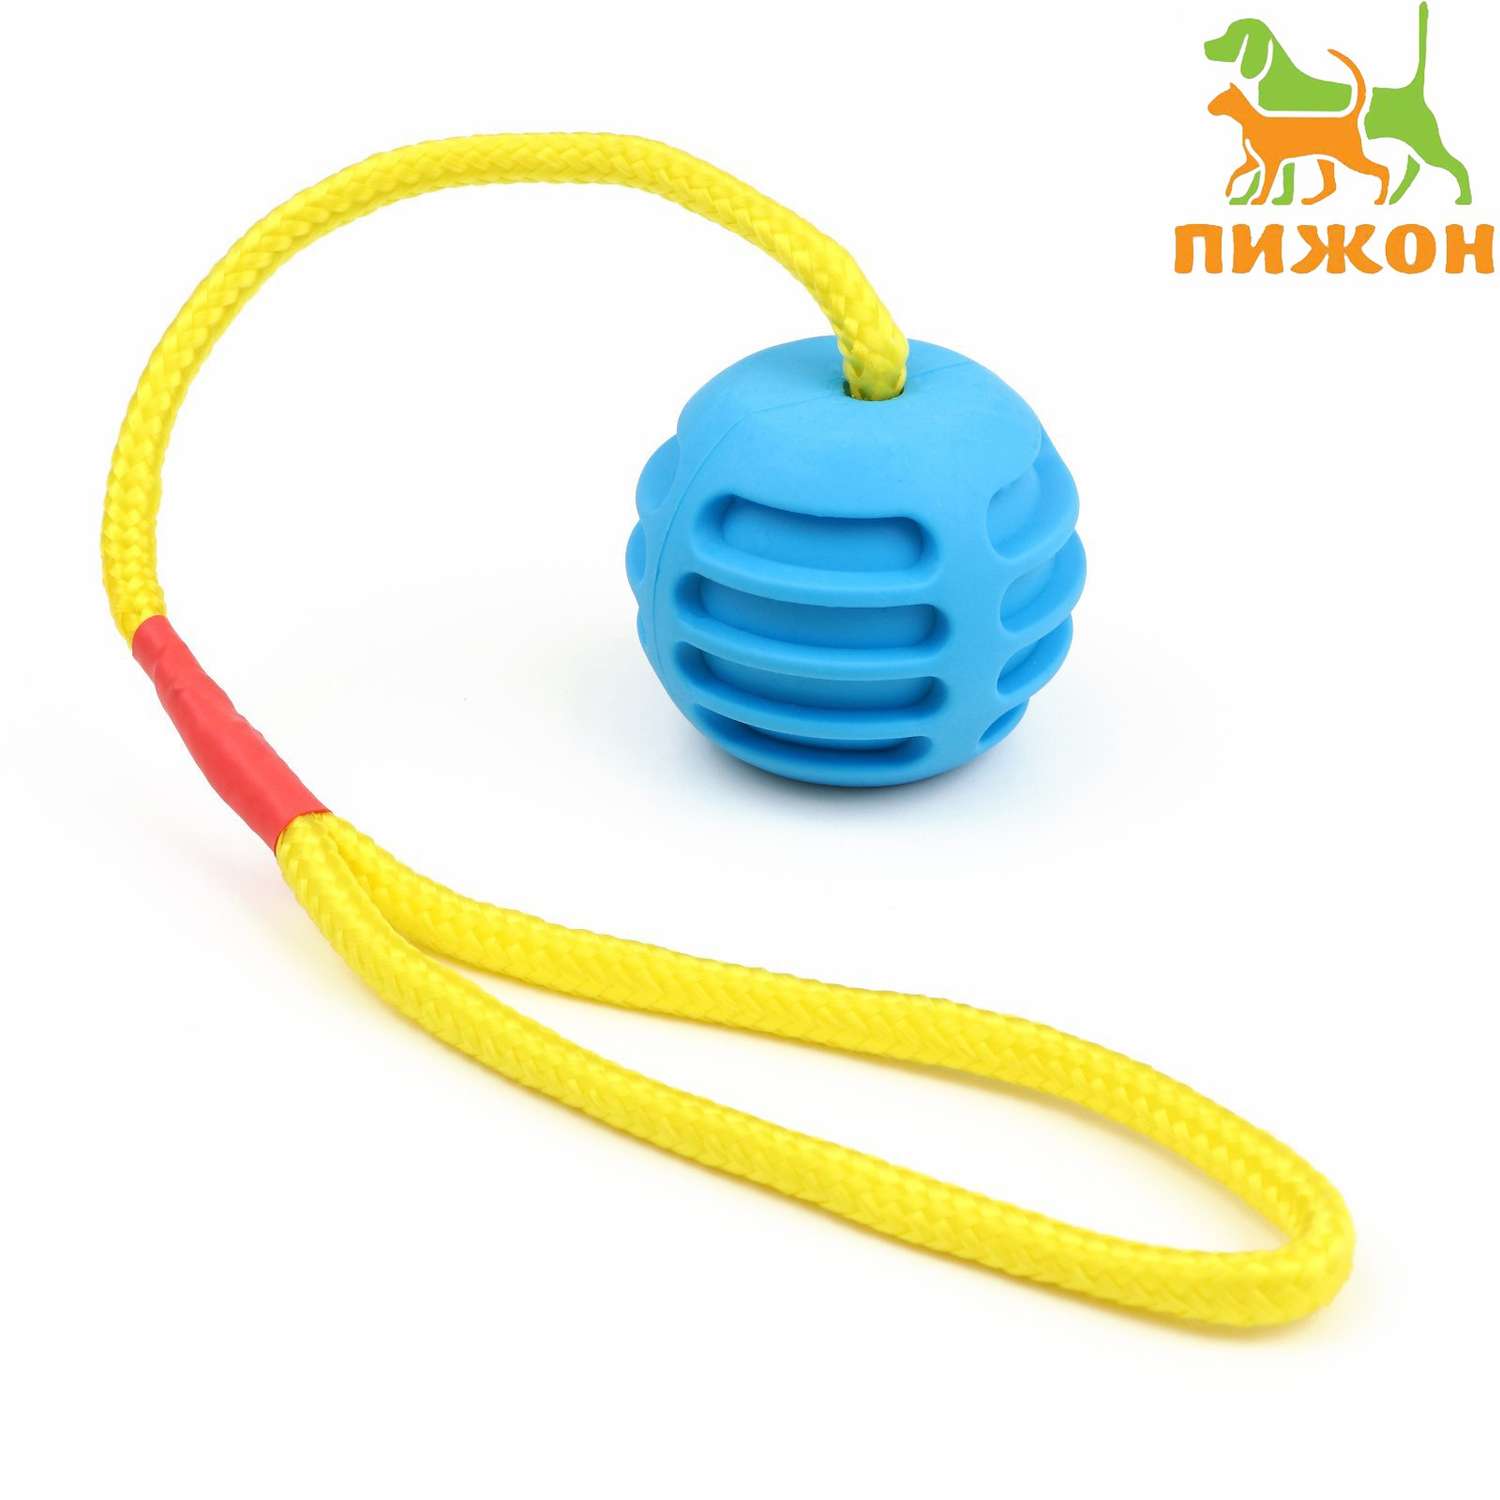 Игрушка Пижон «Шар усиленный на веревке» 43 см шар 6 см голубой - фото 1